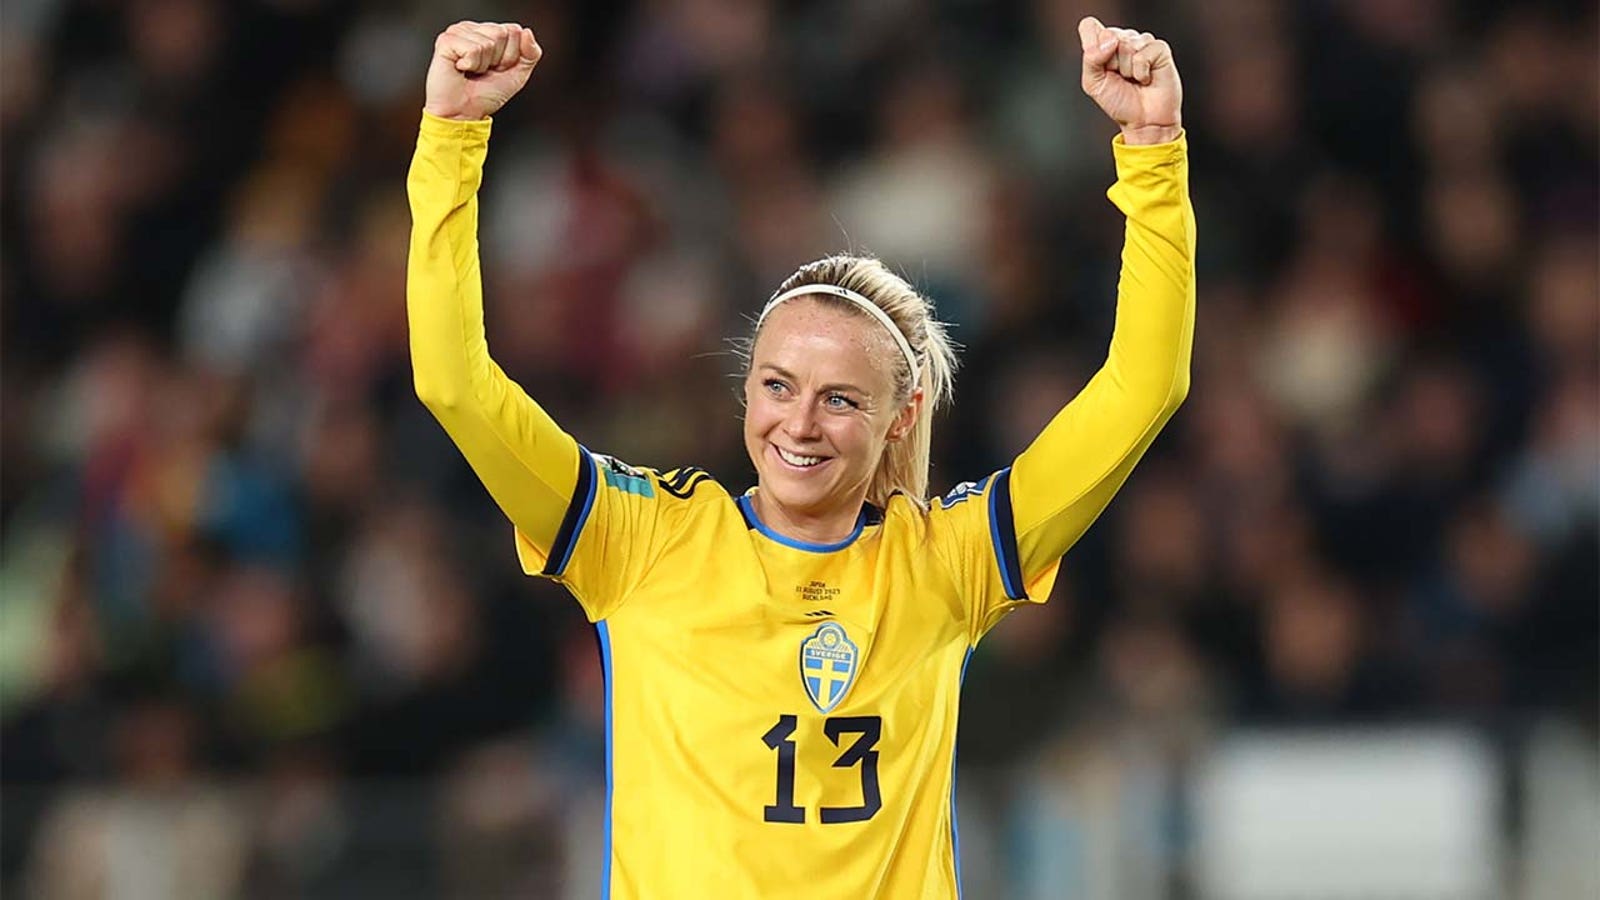 Szwedka Amanda Ellstedt zdobywa bramkę przeciwko Japonii w 32. minucie